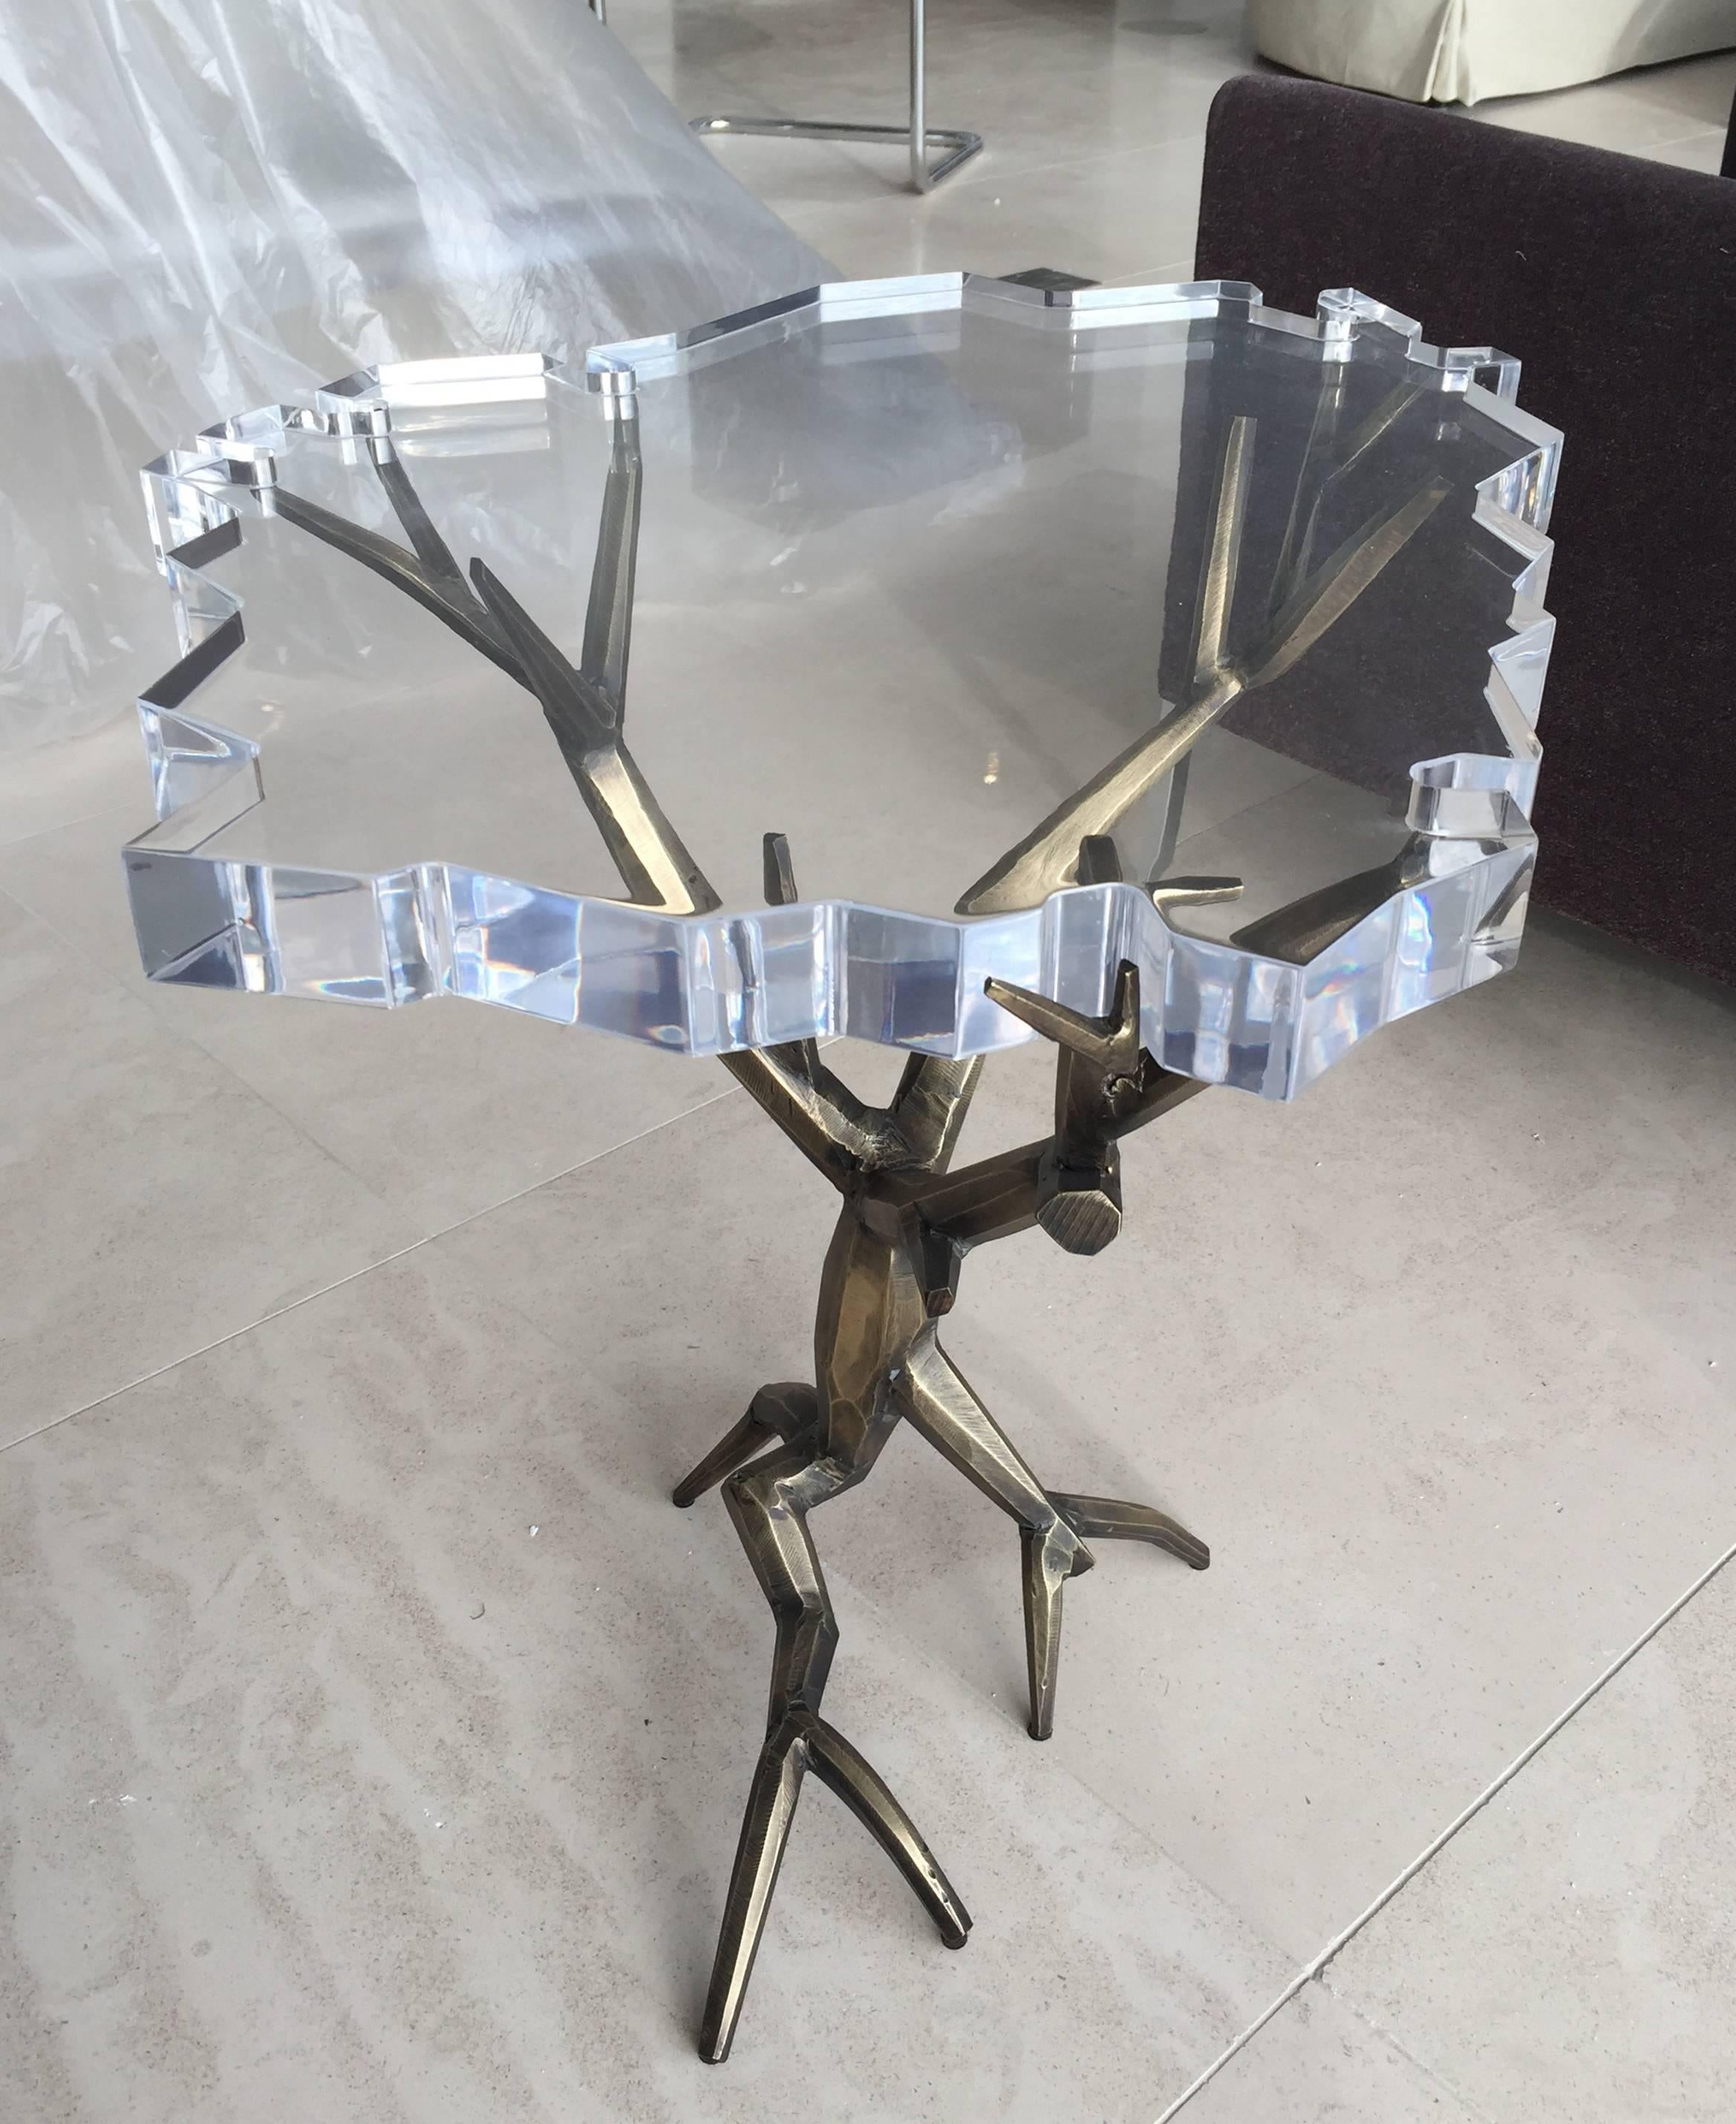 Cette magnifique table d'appoint en laiton massif avec une finition en bronze est une création unique du designer Amparo Calderon Tapia, conçue exclusivement pour Cain Modern.
Cette pièce fait partie de la série 